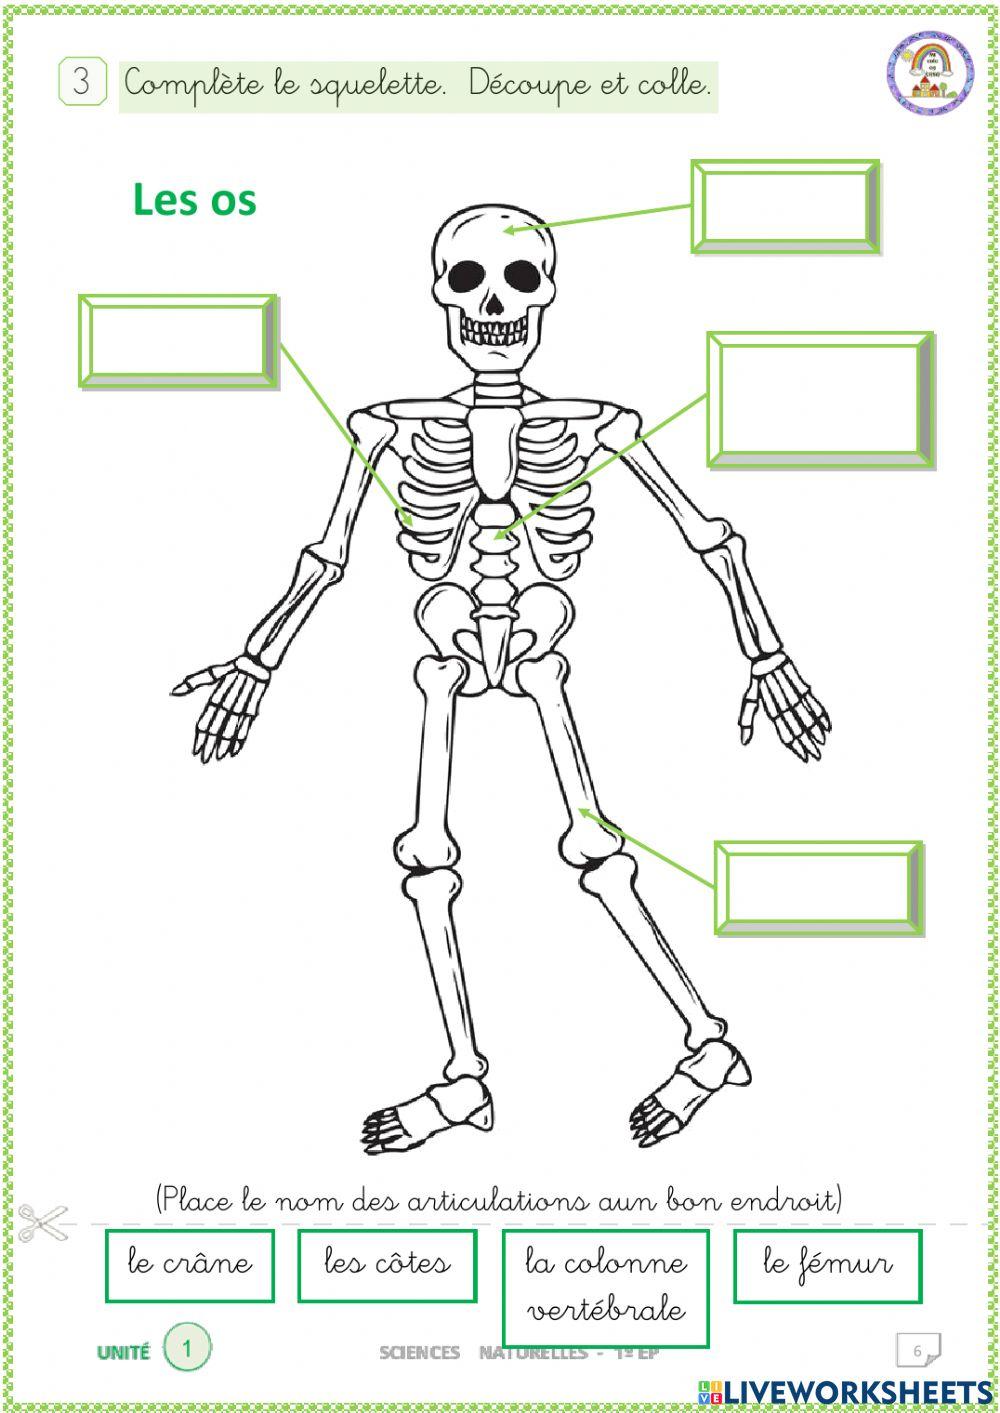 Les os. Complète le squelette.